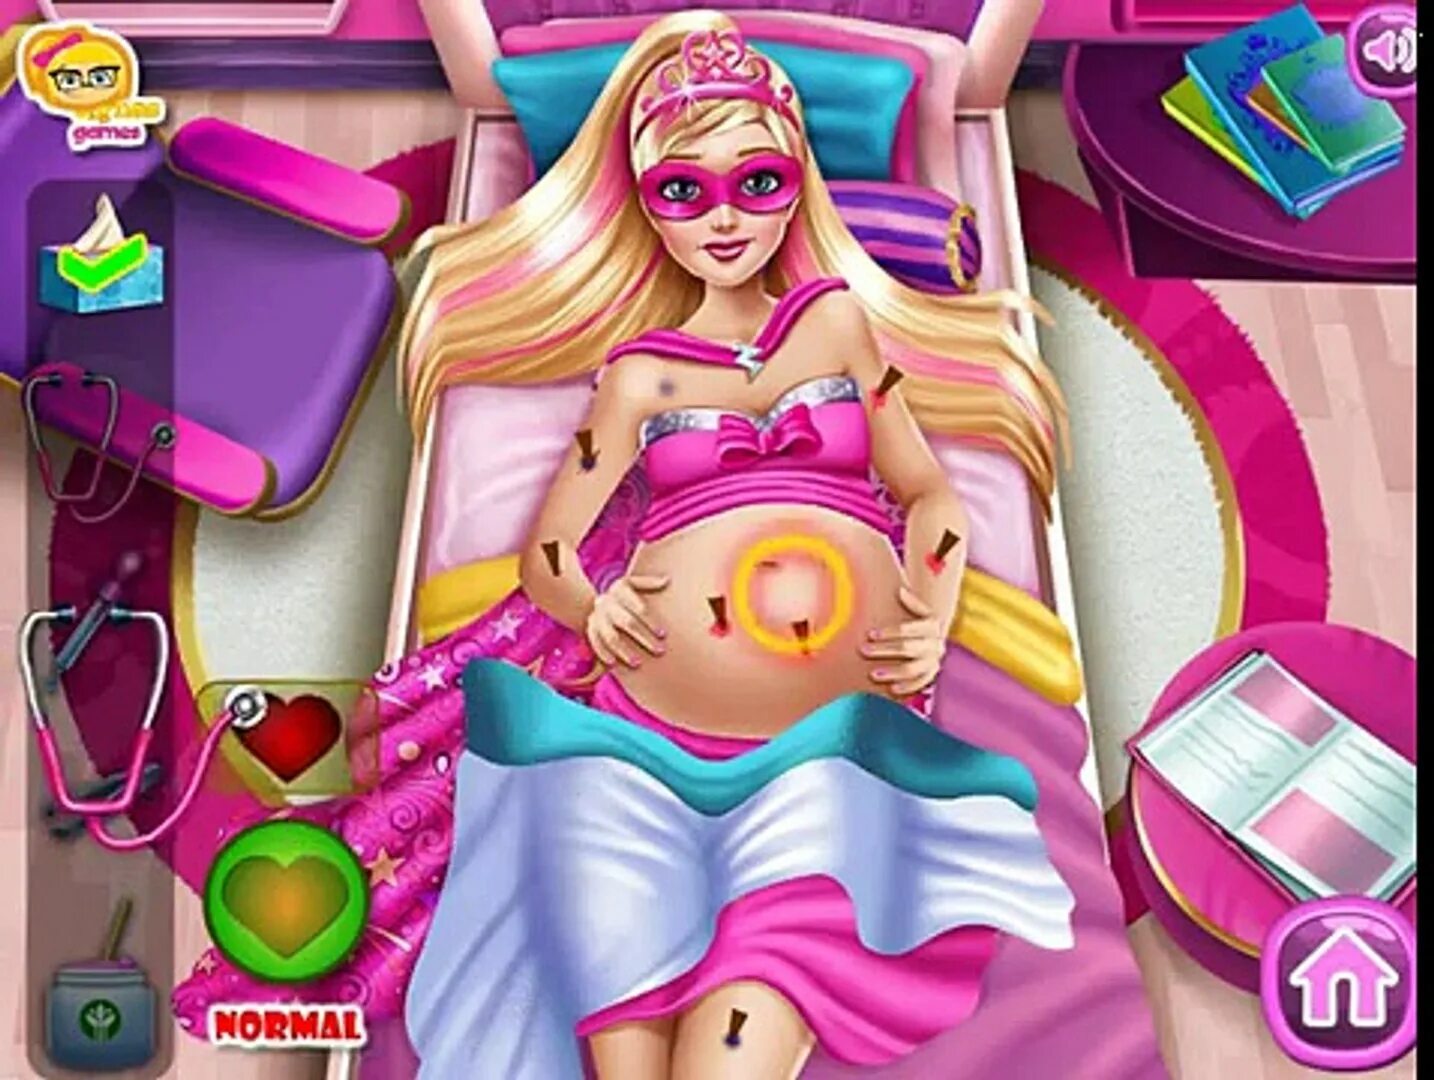 Игра принимать роды. Игры для девочек Барби беременна.